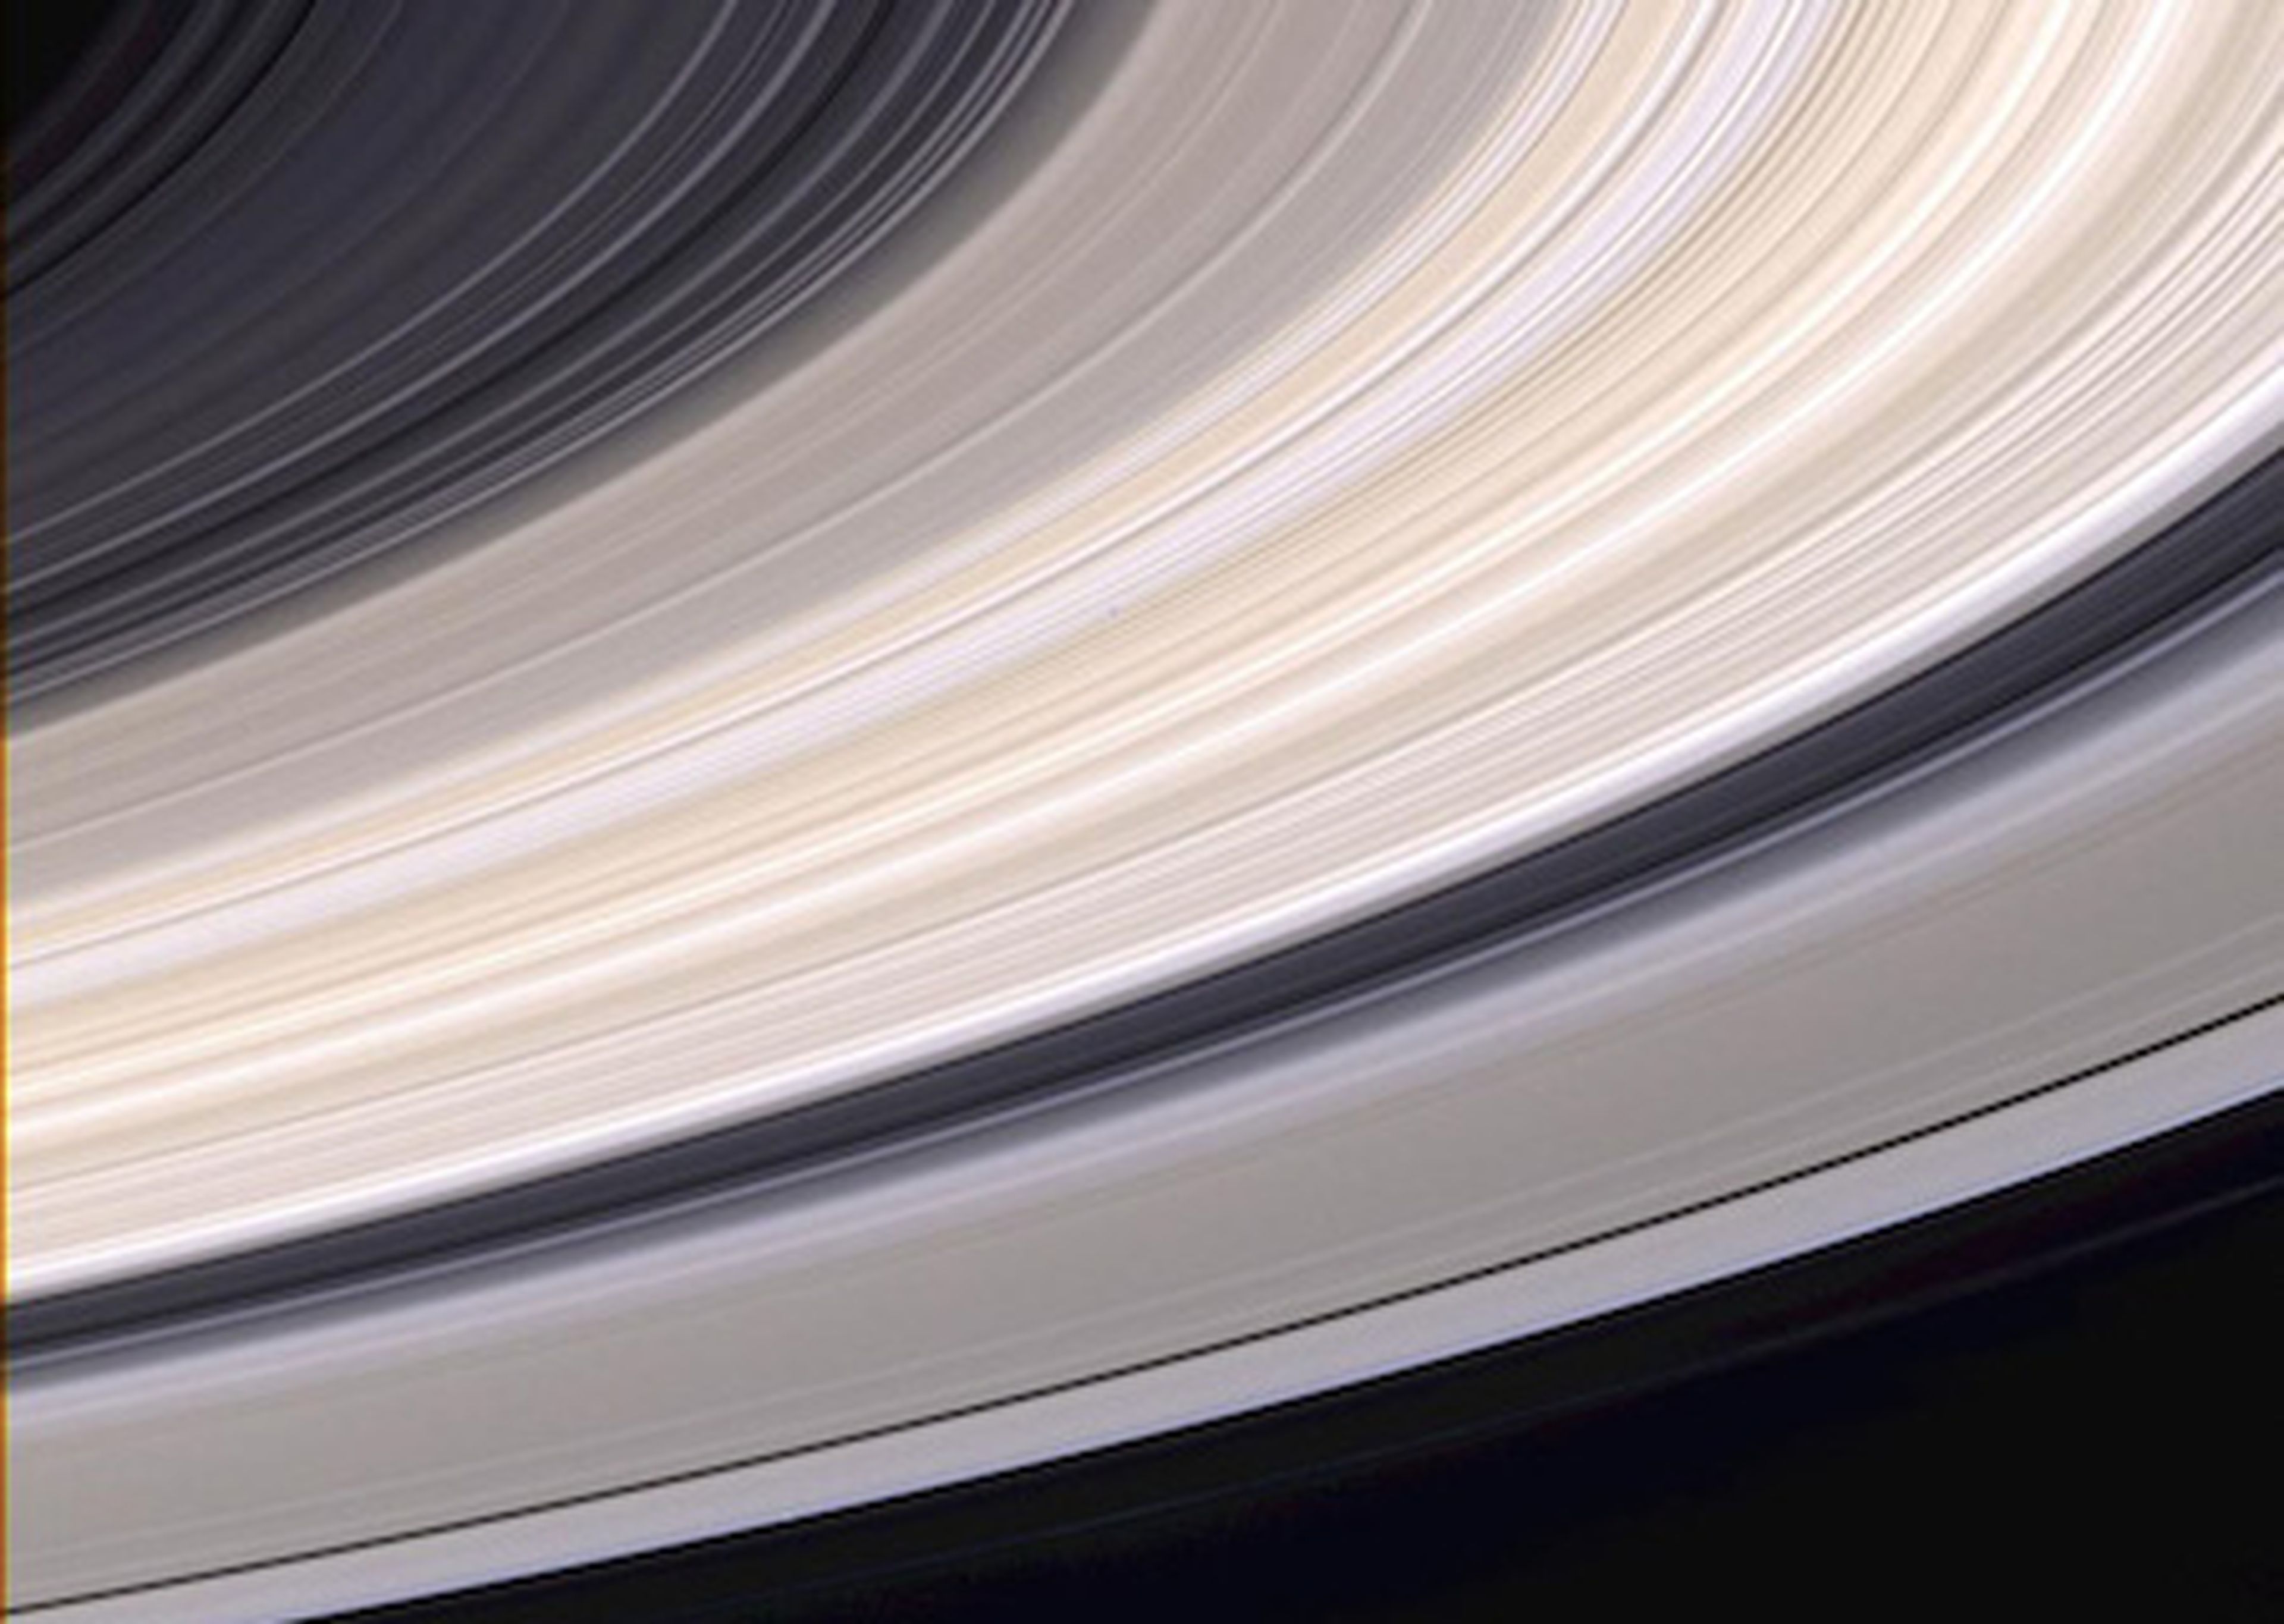 Fotografía de los anillos de Saturno tomada por la nave espacial Cassini.